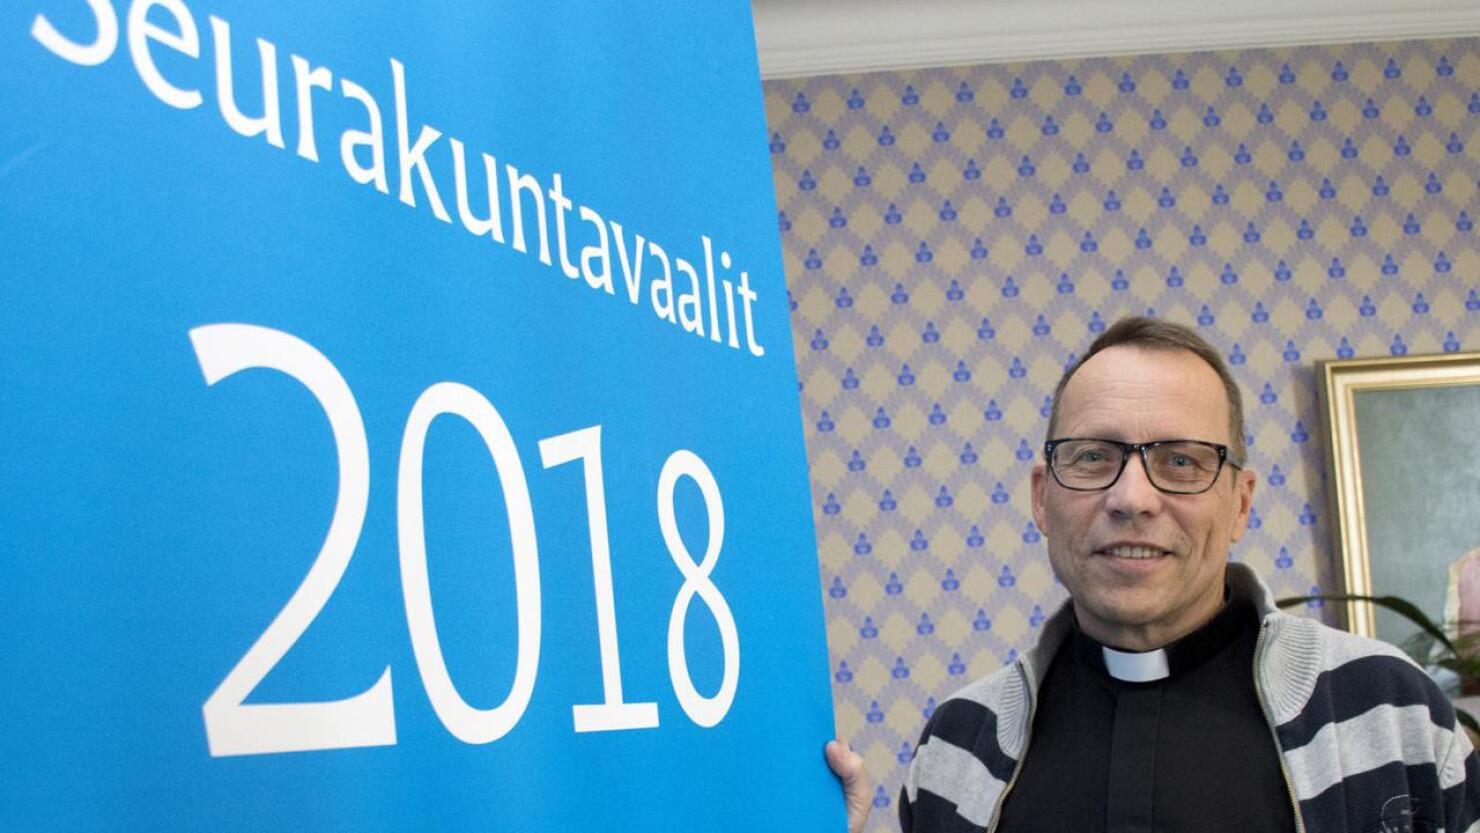 Kirkkoherra Kari Lauri kannustaa ryhtymään rohkeasti ehdokkaaksi.